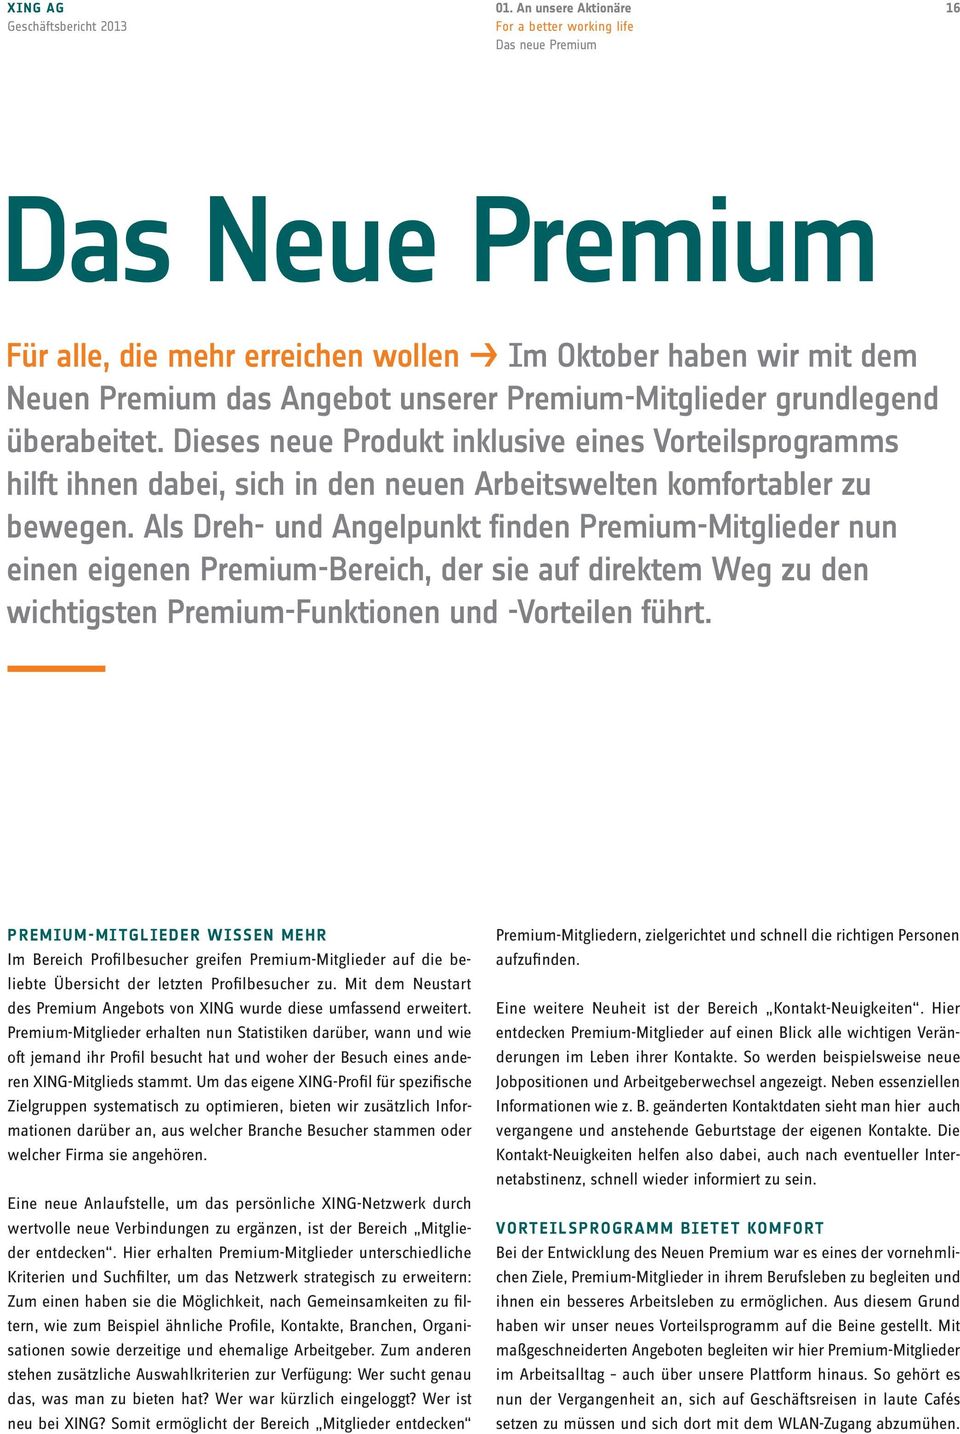 Als Dreh- und Angelpunkt finden Premium-Mitglieder nun einen eigenen Premium-Bereich, der sie auf direktem Weg zu den wichtigsten Premium-Funktionen und -Vorteilen führt.